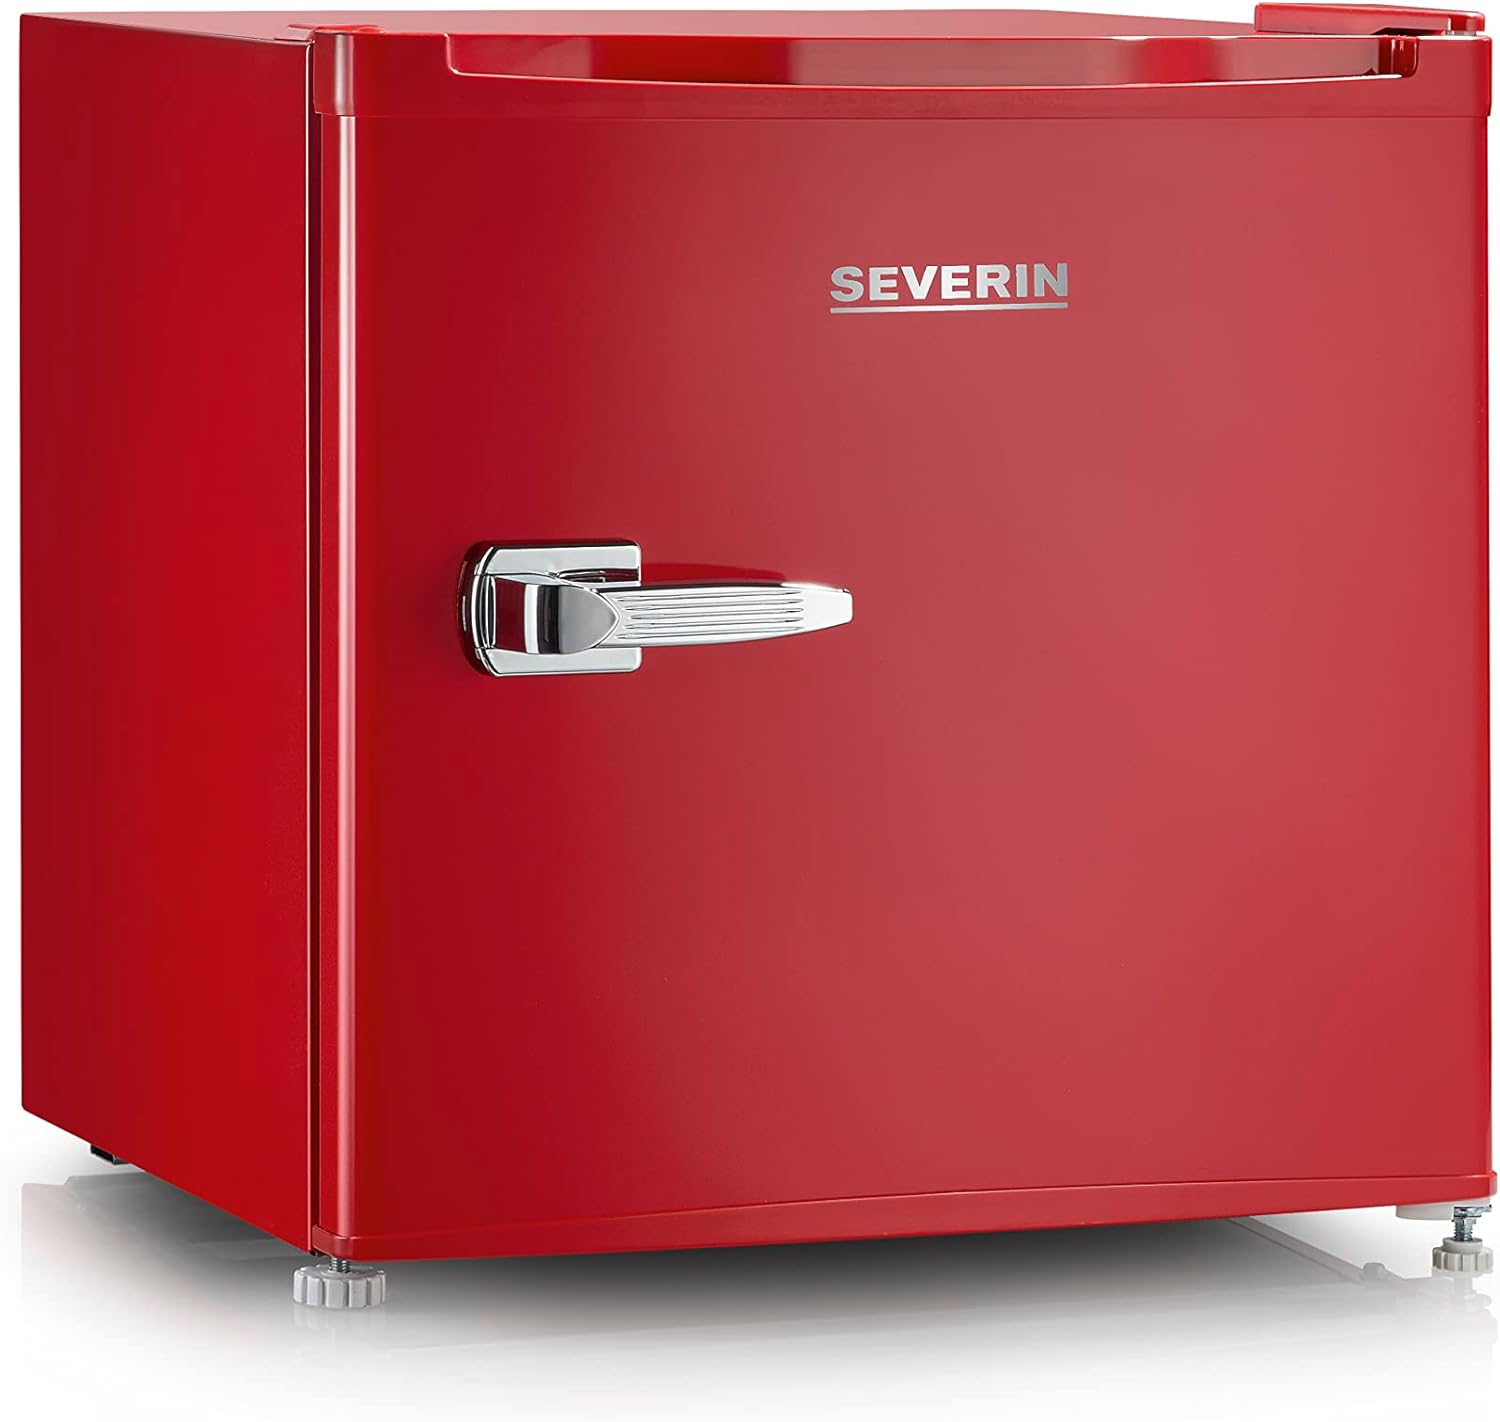 Severin Mini frigo/congelatore retrò (31 l), piccolo congelatore con controllo flessibile della temperatura, frigorifero da tavolo, rosso, GB 8881